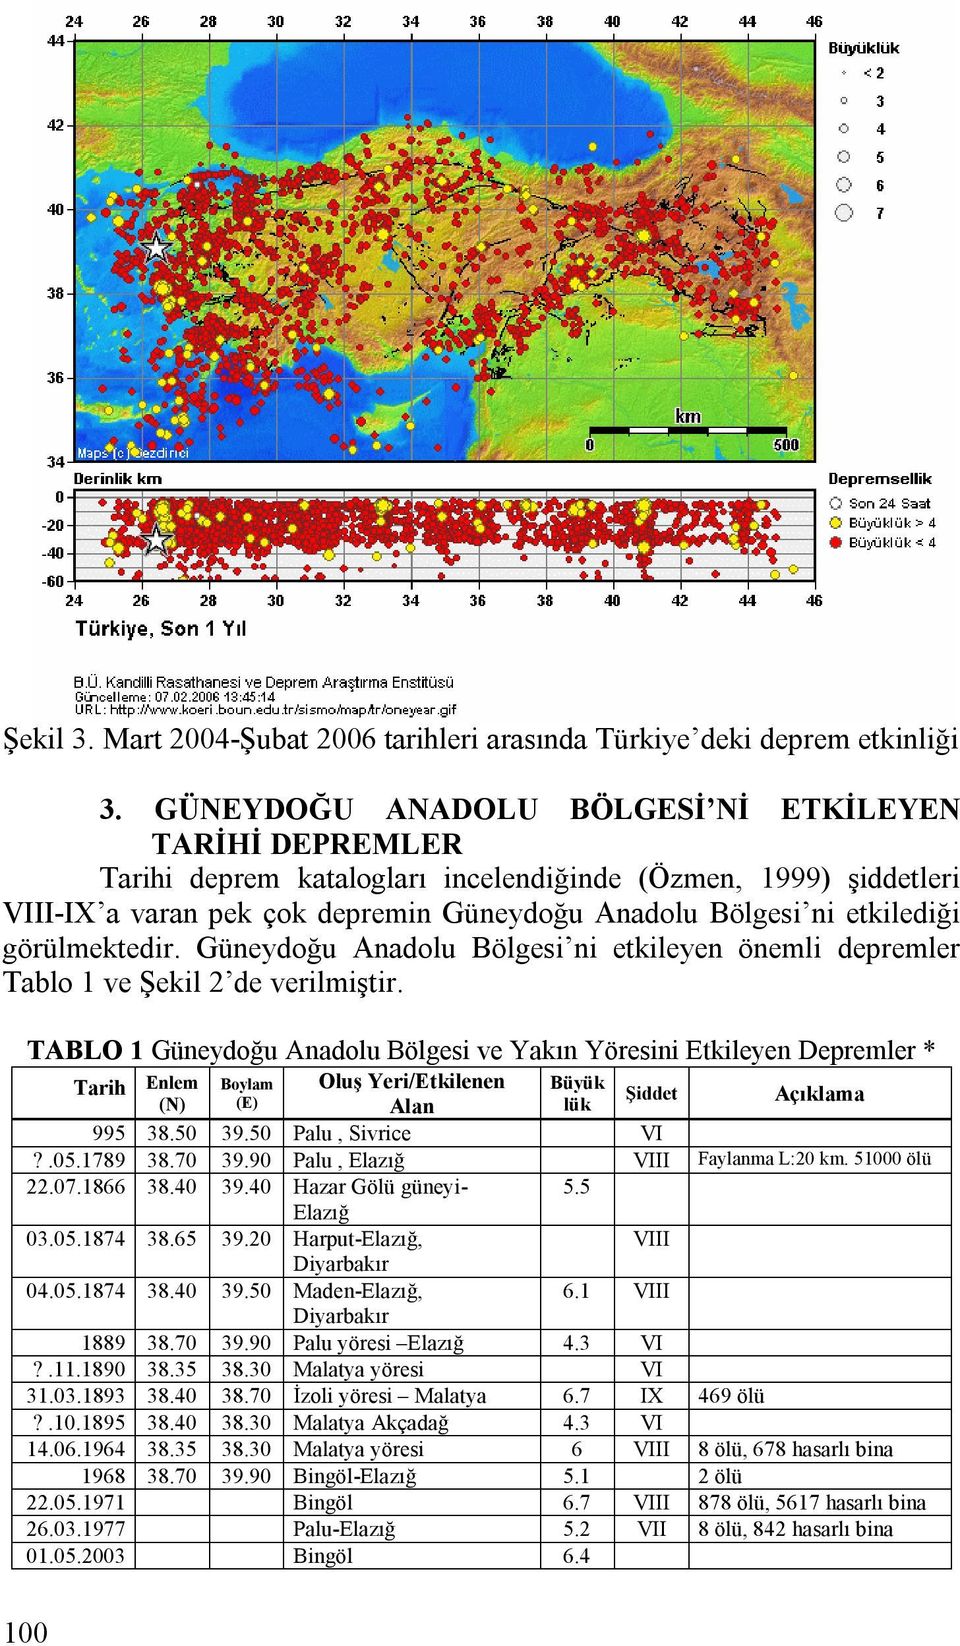 görülmektedir. Güneydoğu Anadolu Bölgesi ni etkileyen önemli depremler Tablo 1 ve Şekil 2 de verilmiştir.